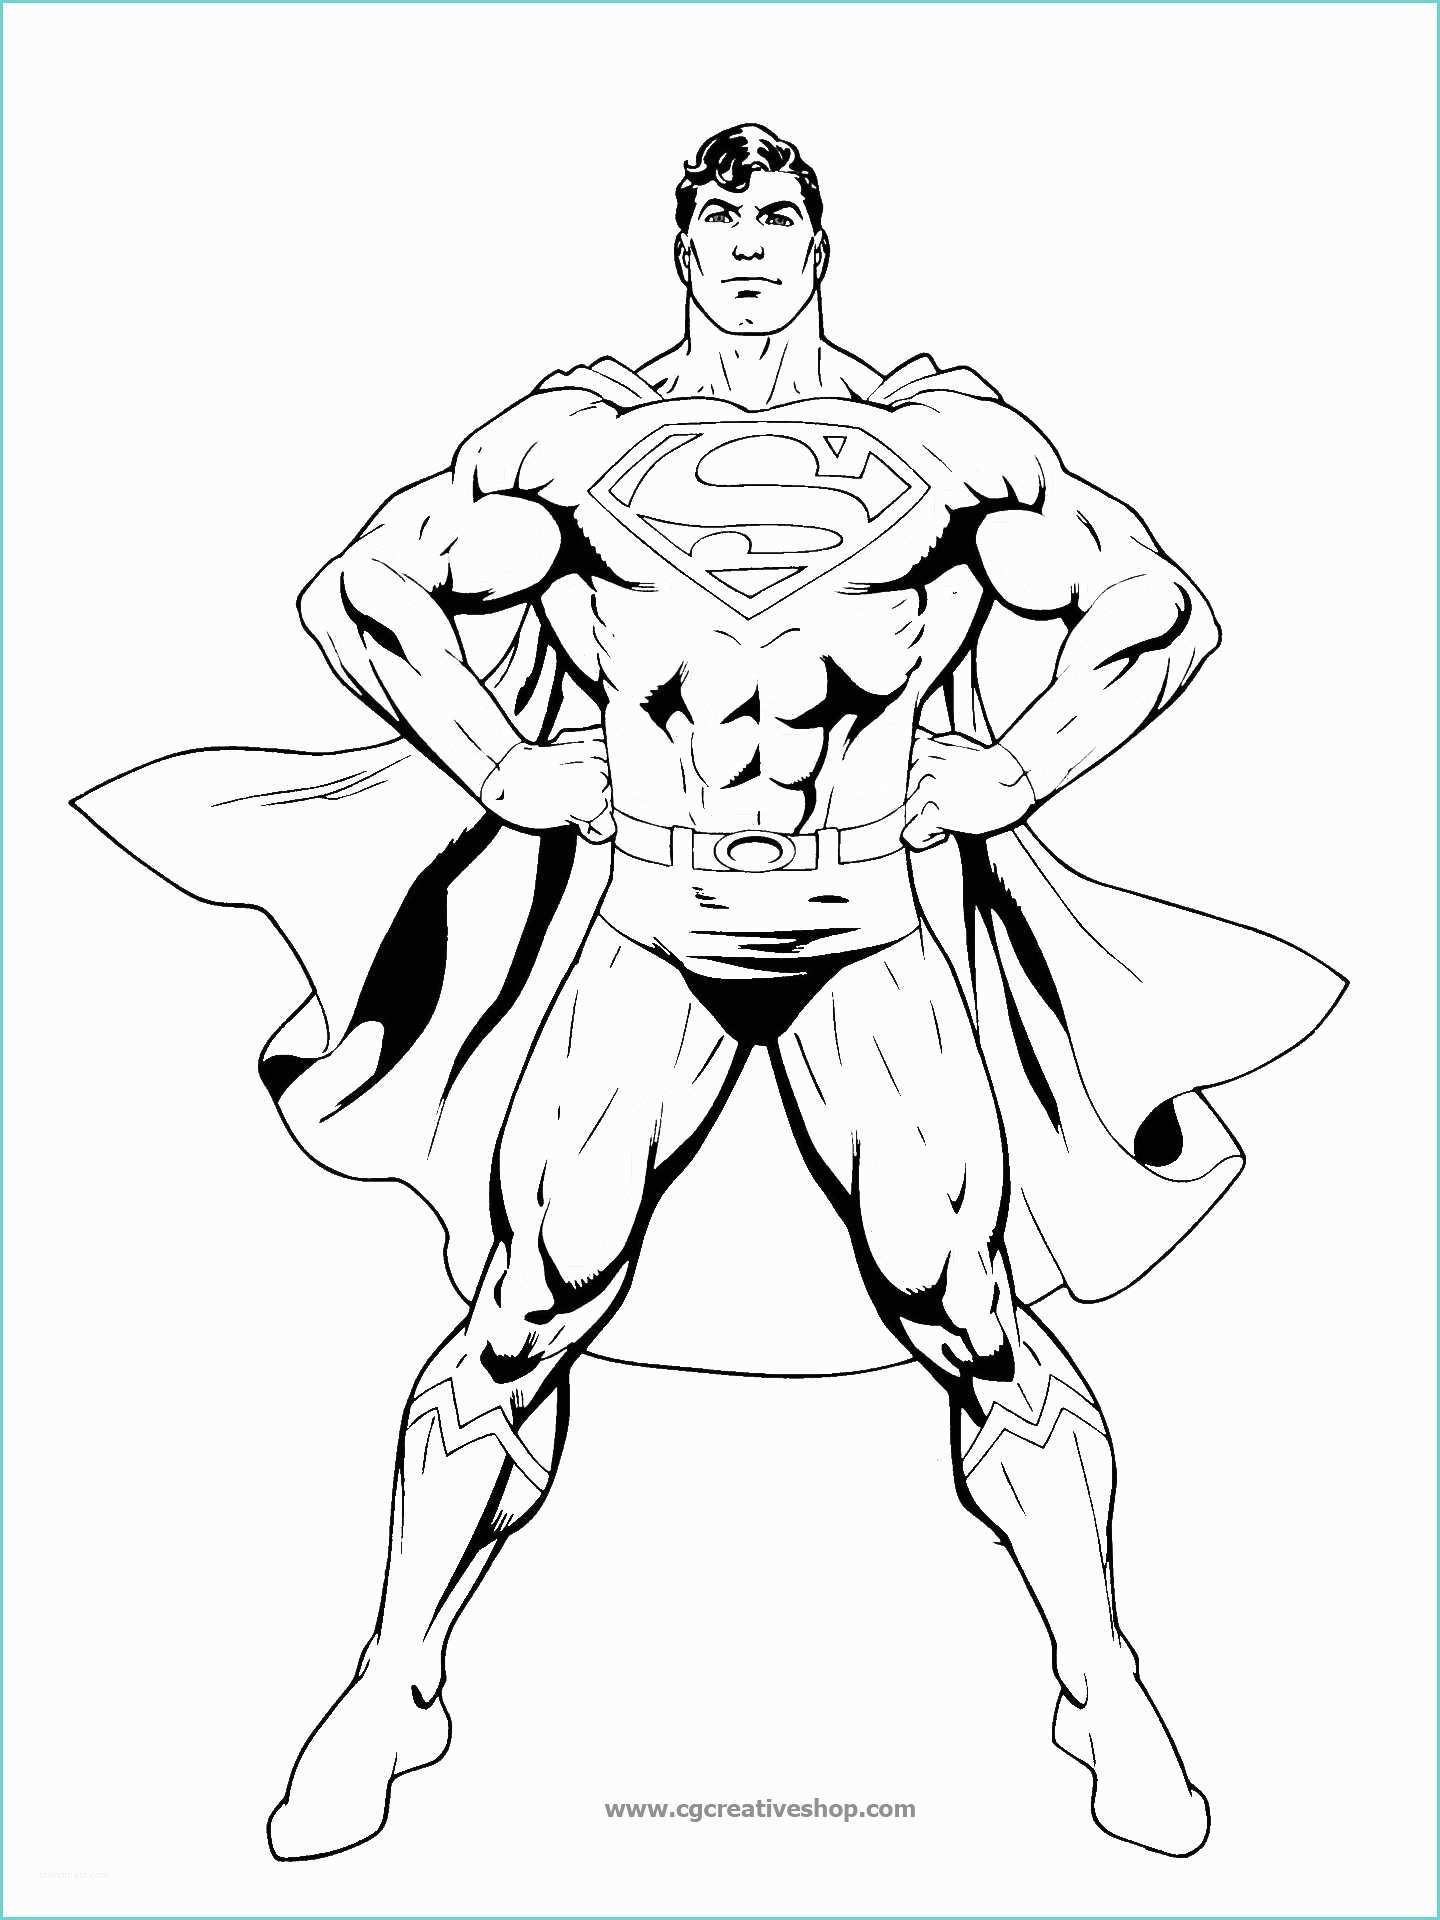 Immagini Di Spiderman Da Disegnare Superman Disegno Da Colorare